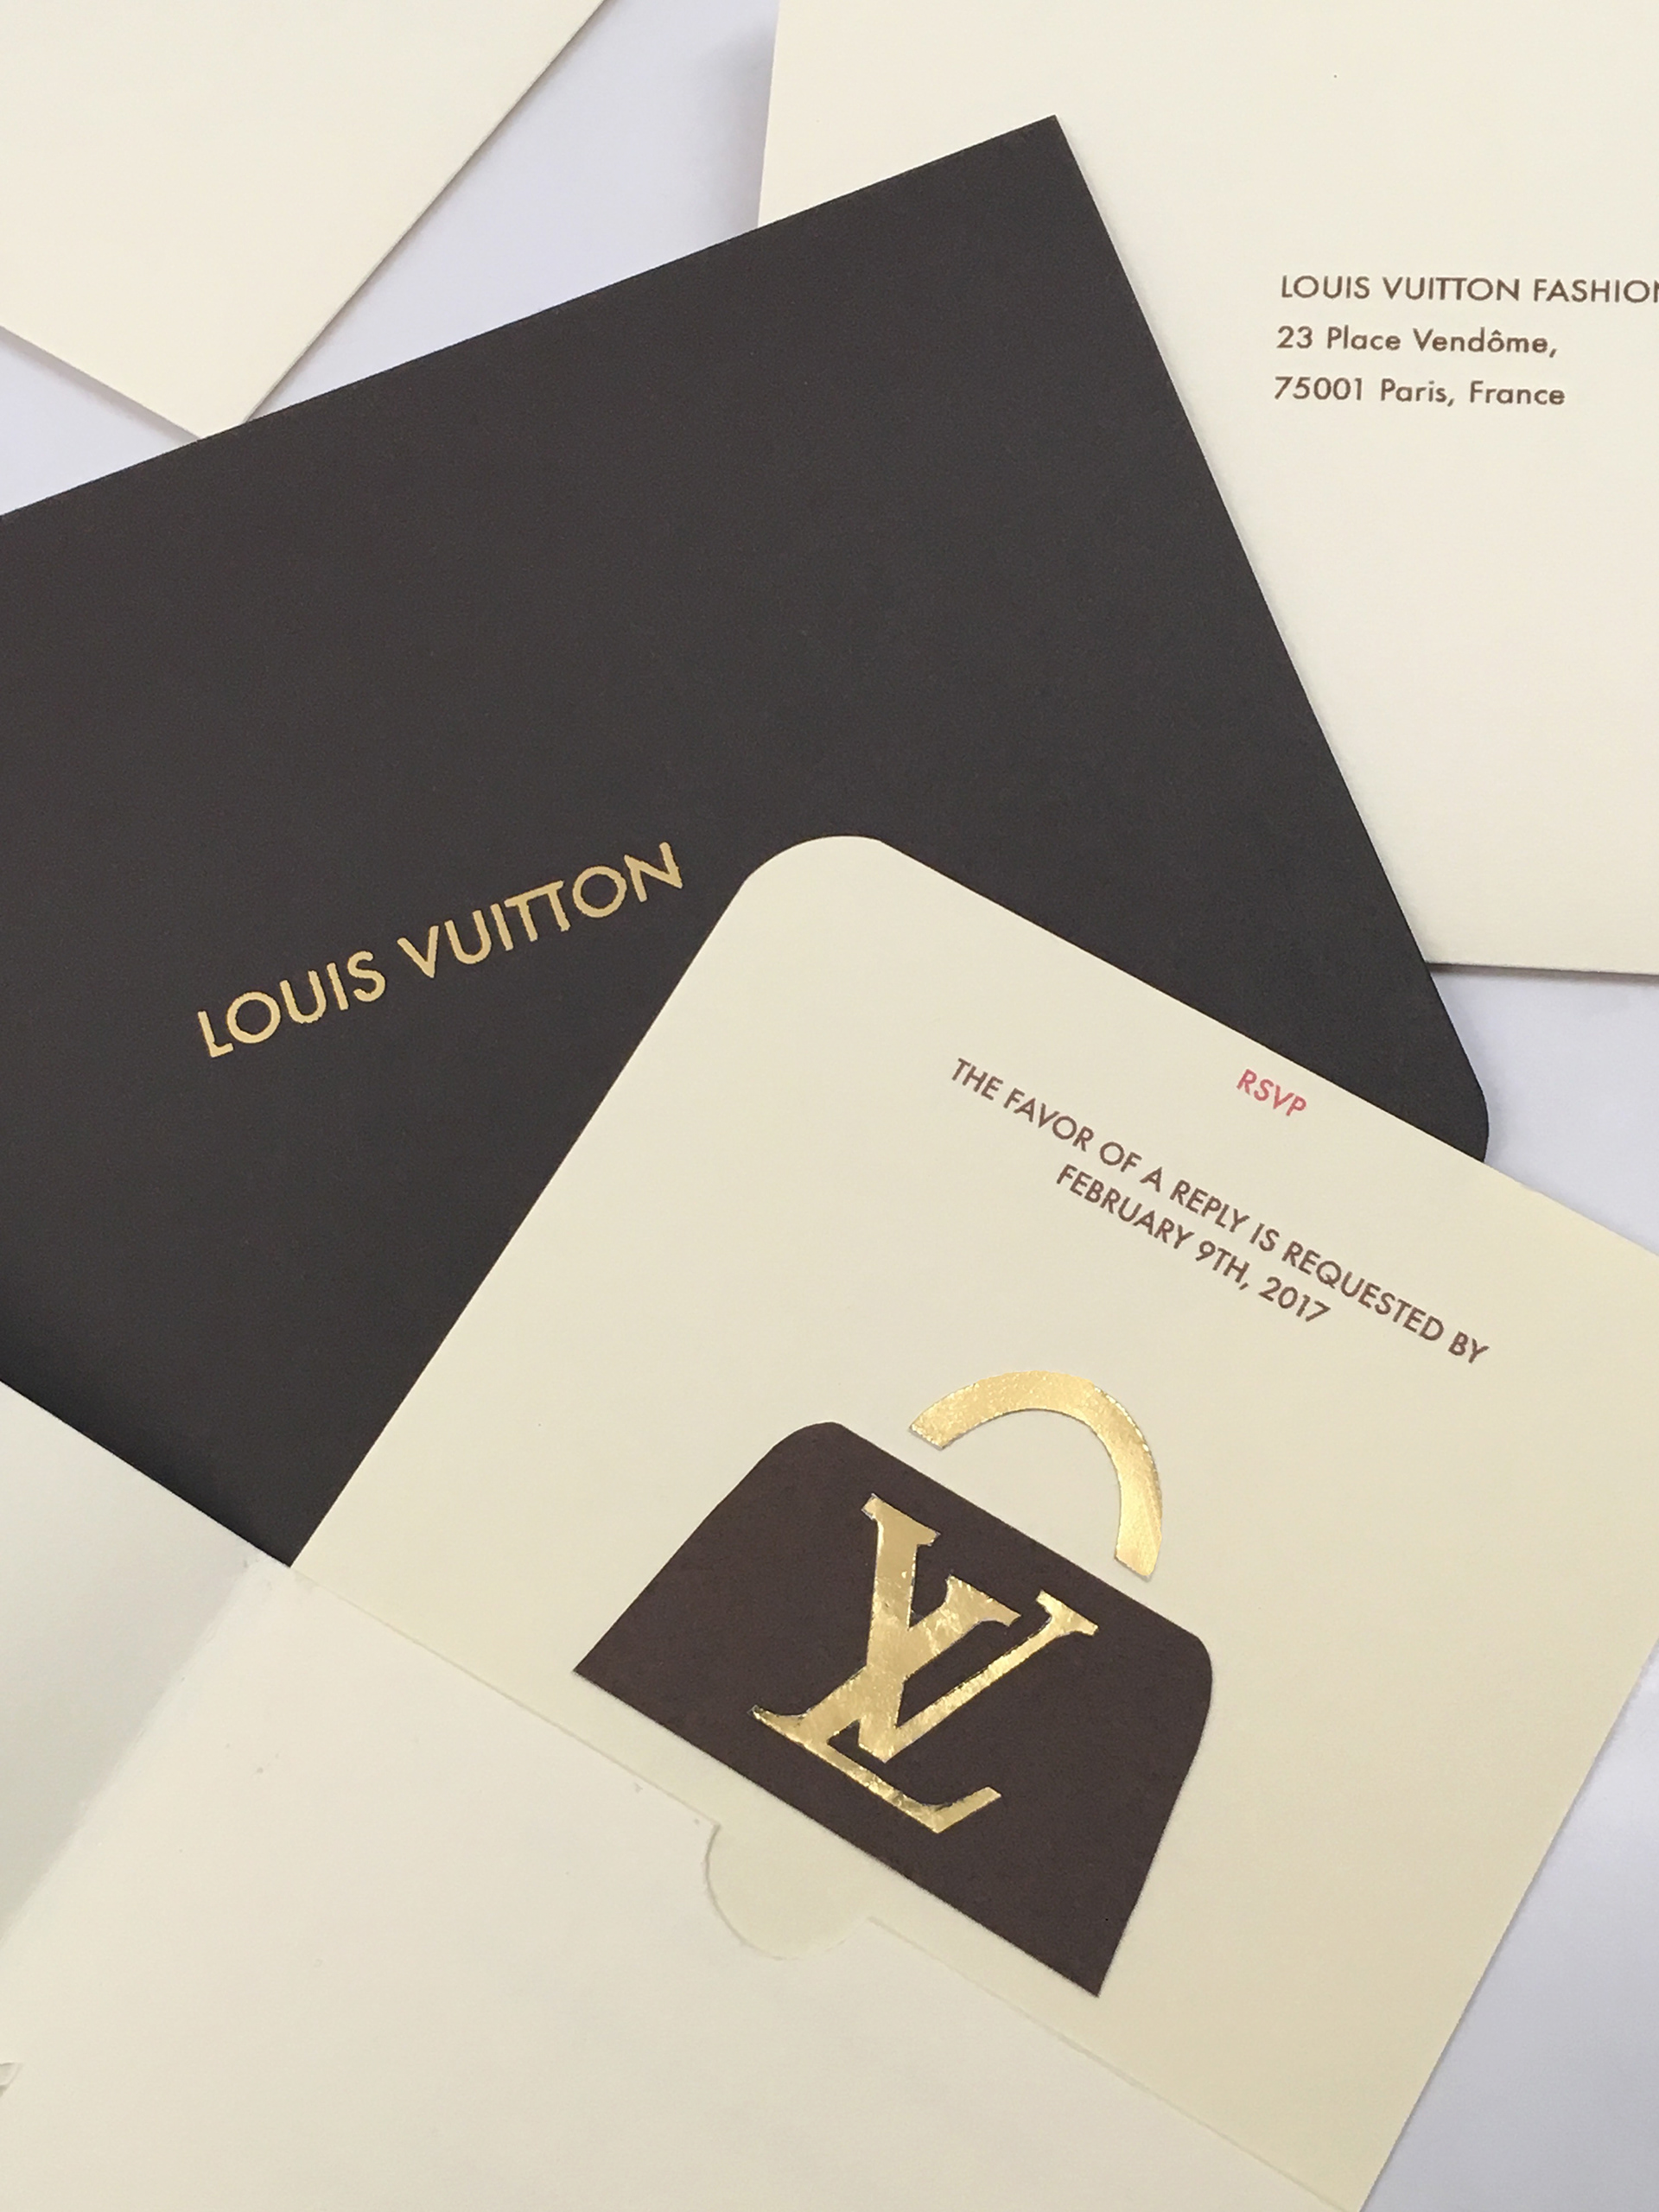 Jamie Woohyun Joo - Louis Vuitton Invitation Card